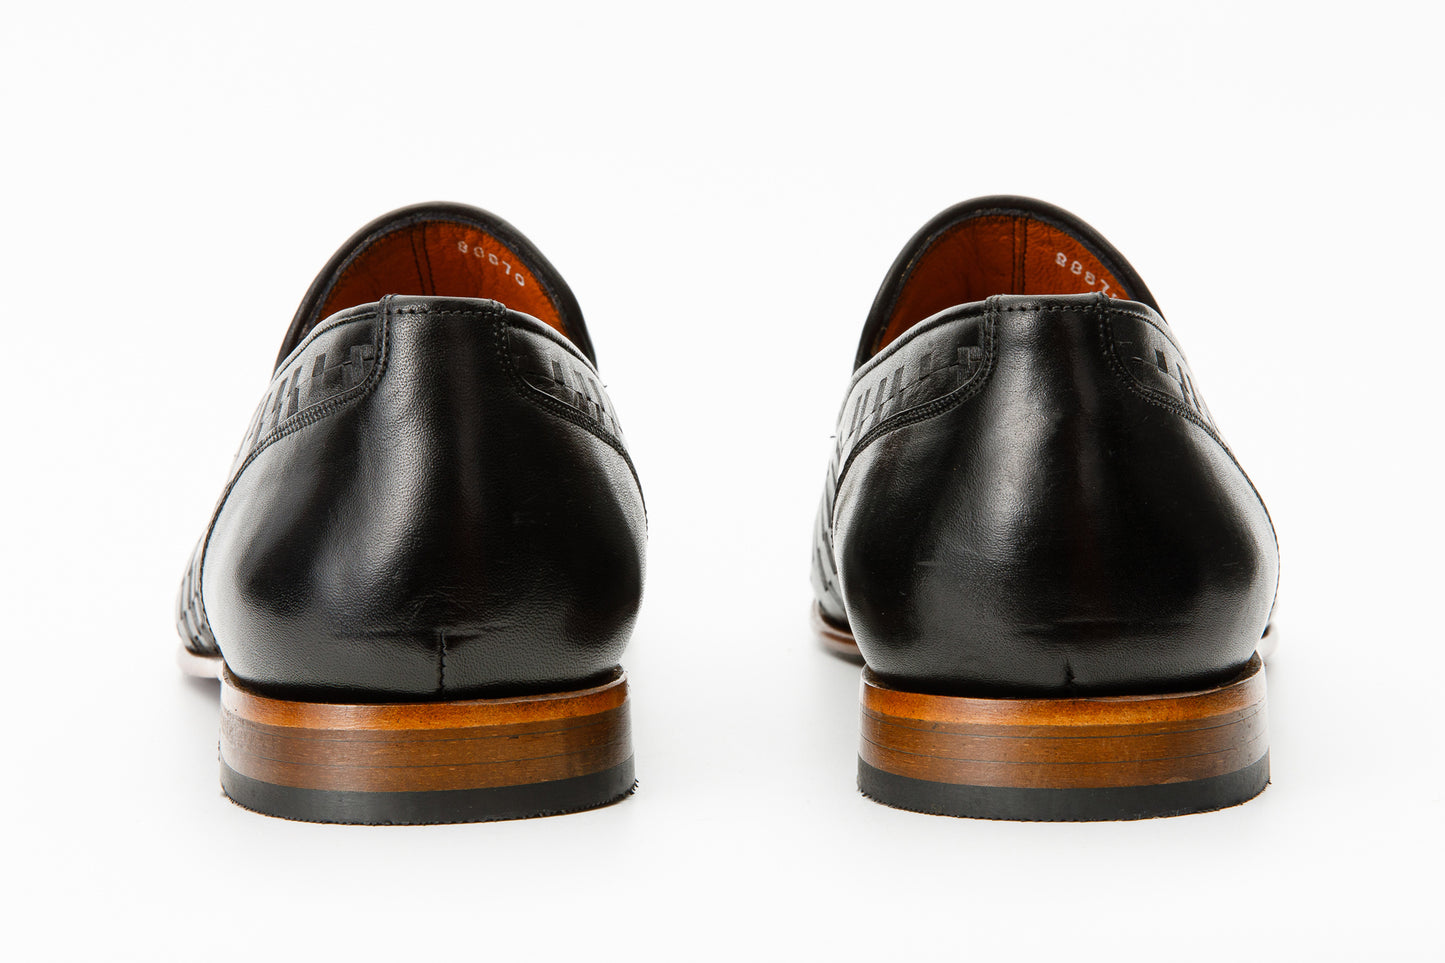 The Meram Black Leather Tassel Slip-On Loafer Men Shoe